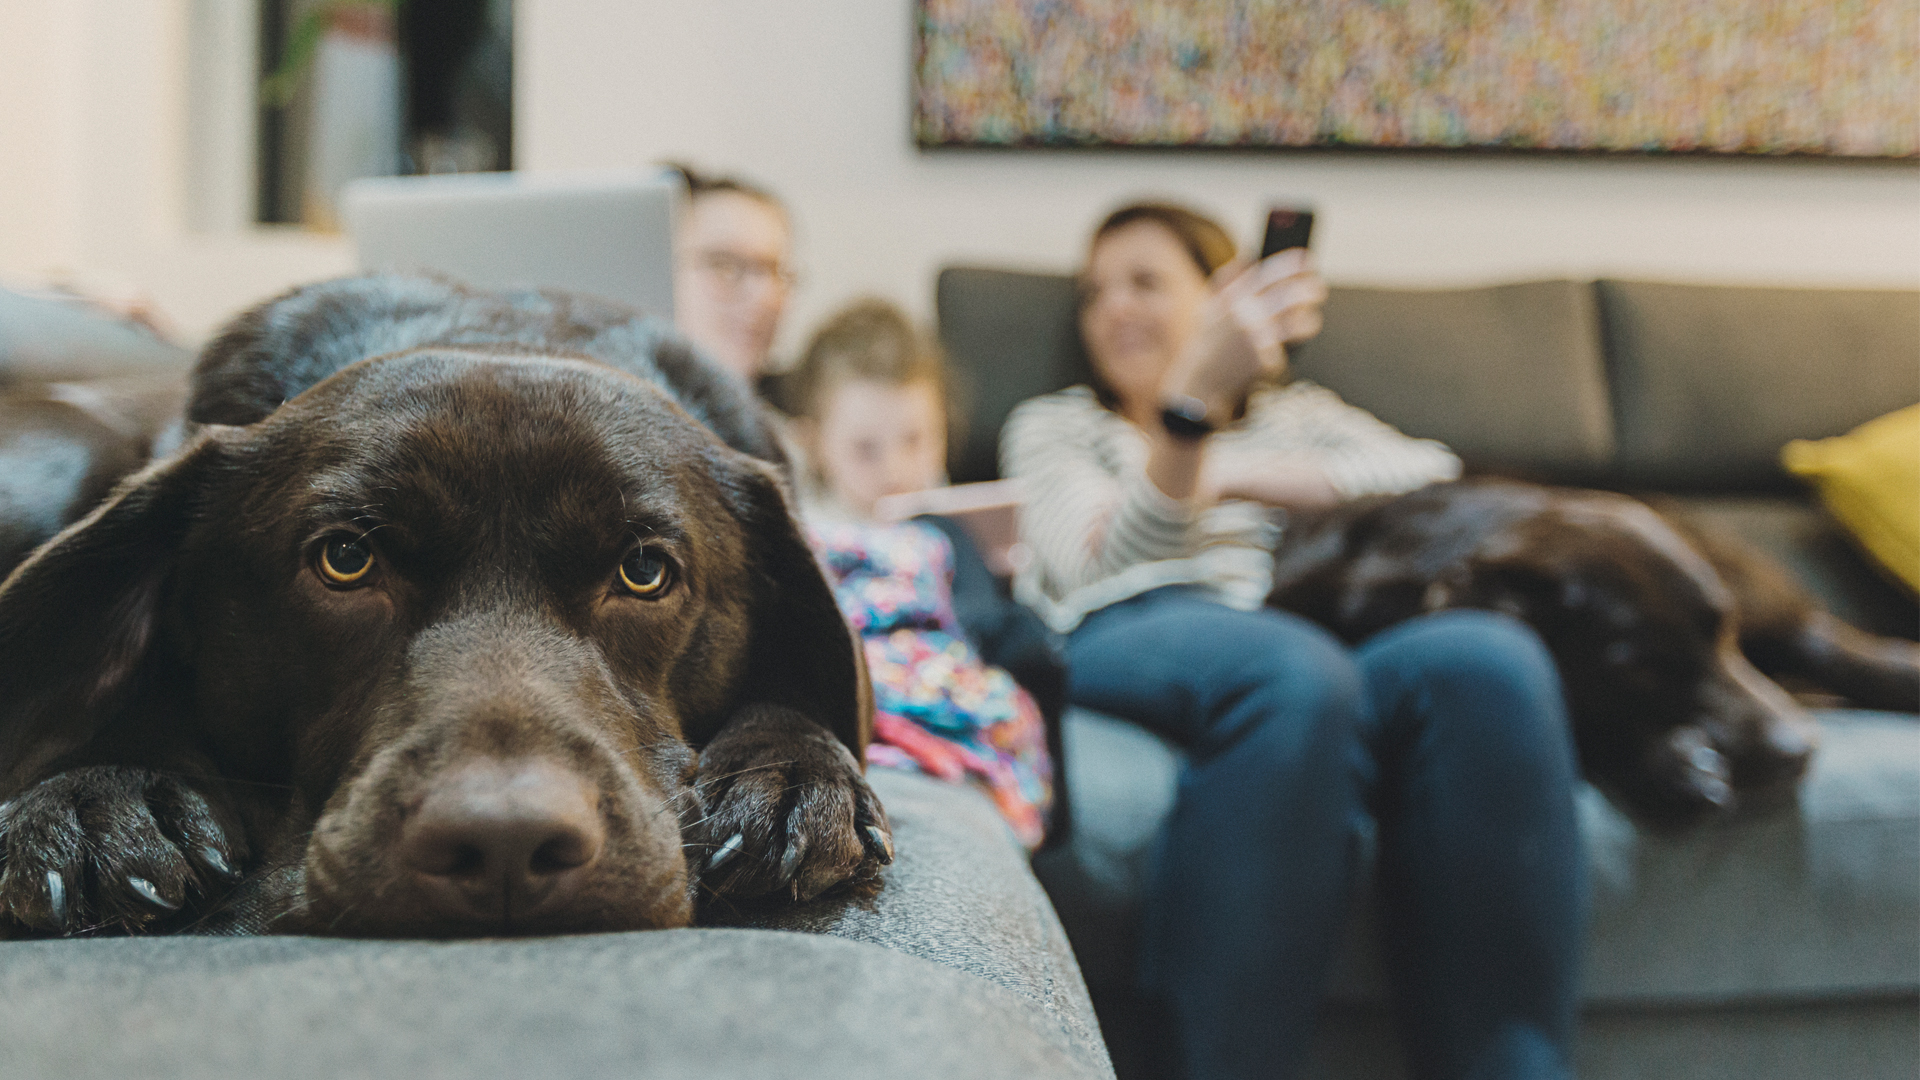 Πώς να καθαρίσετε τον αέρα στο σπίτι σας: εικόνα σκύλου και οικογένειας στους καναπέδες